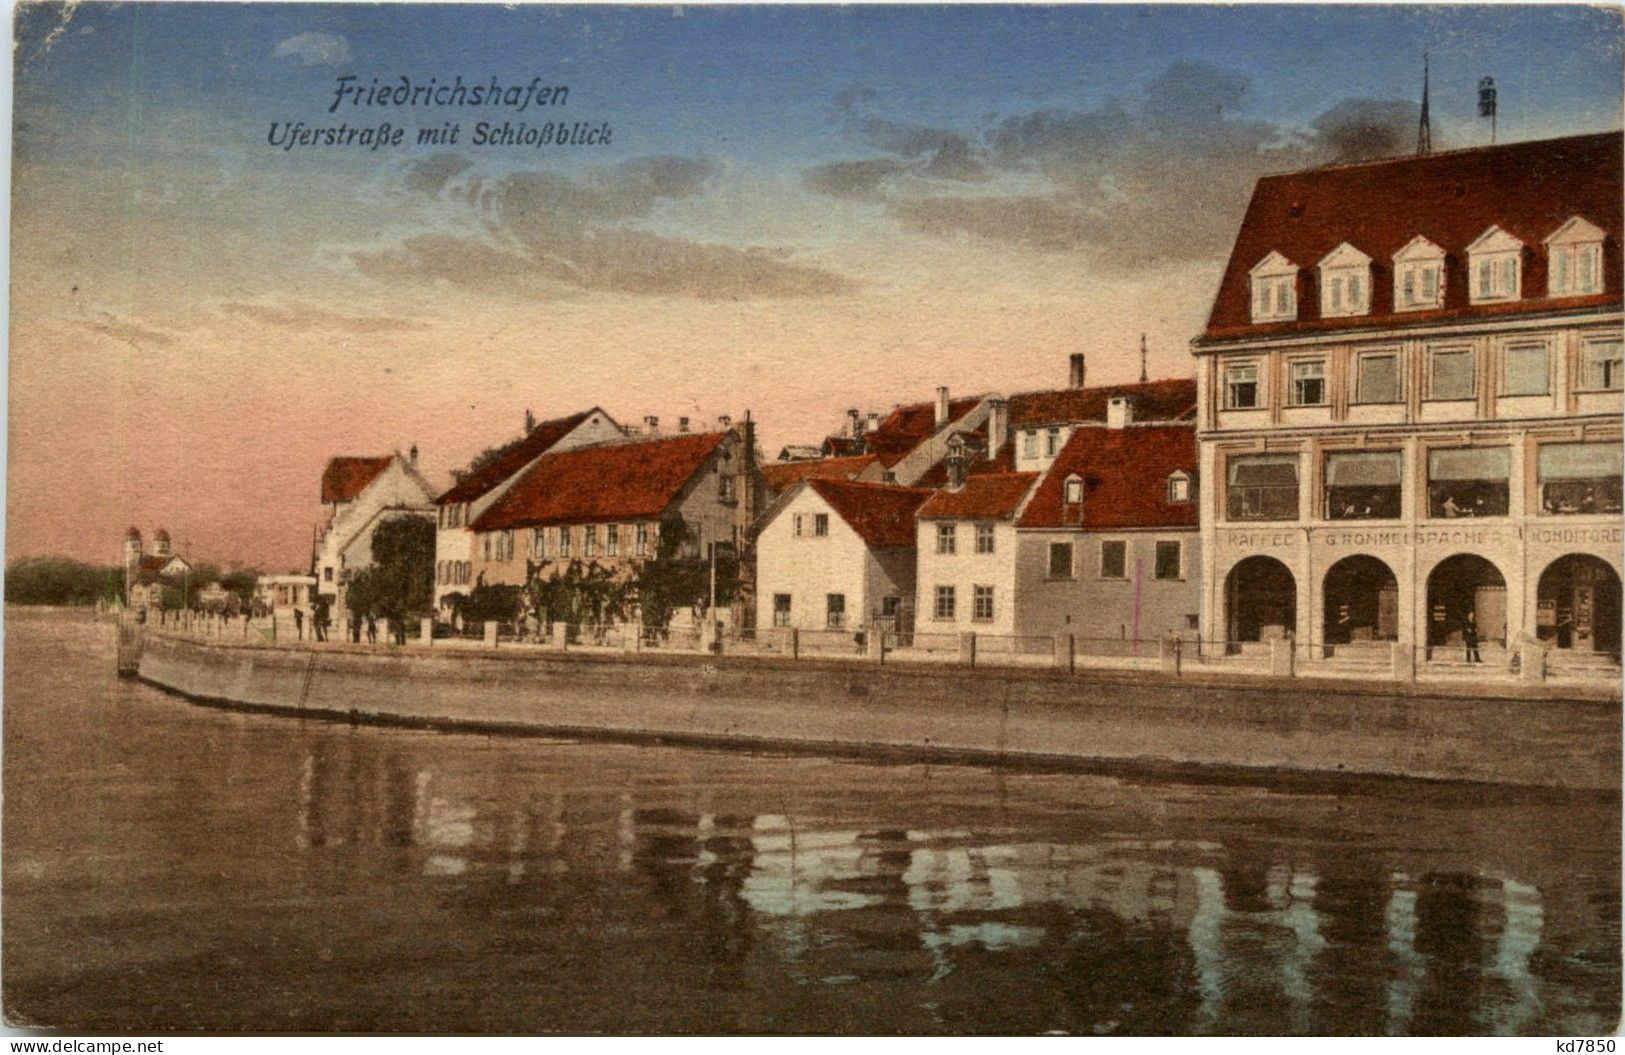 Friedrichshafen - Uferstrasse - Friedrichshafen